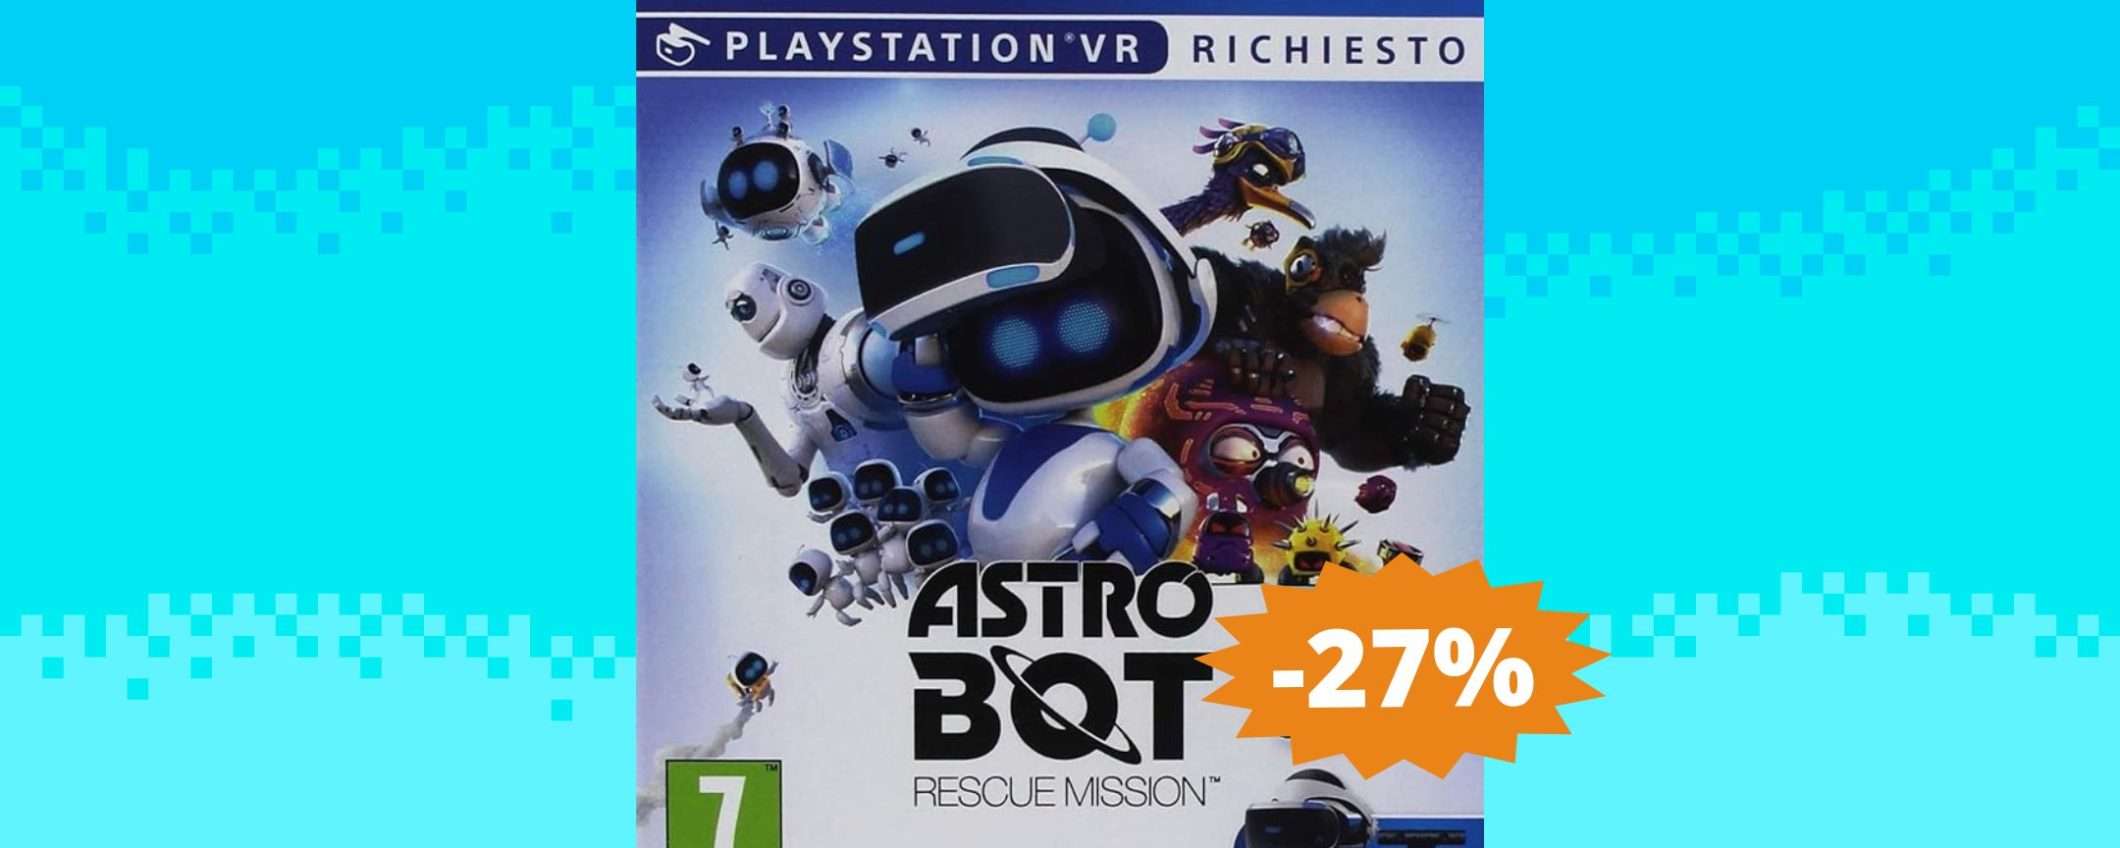 Astro Bot per PS4: un'avventura IMPERDIBILE (-27%)